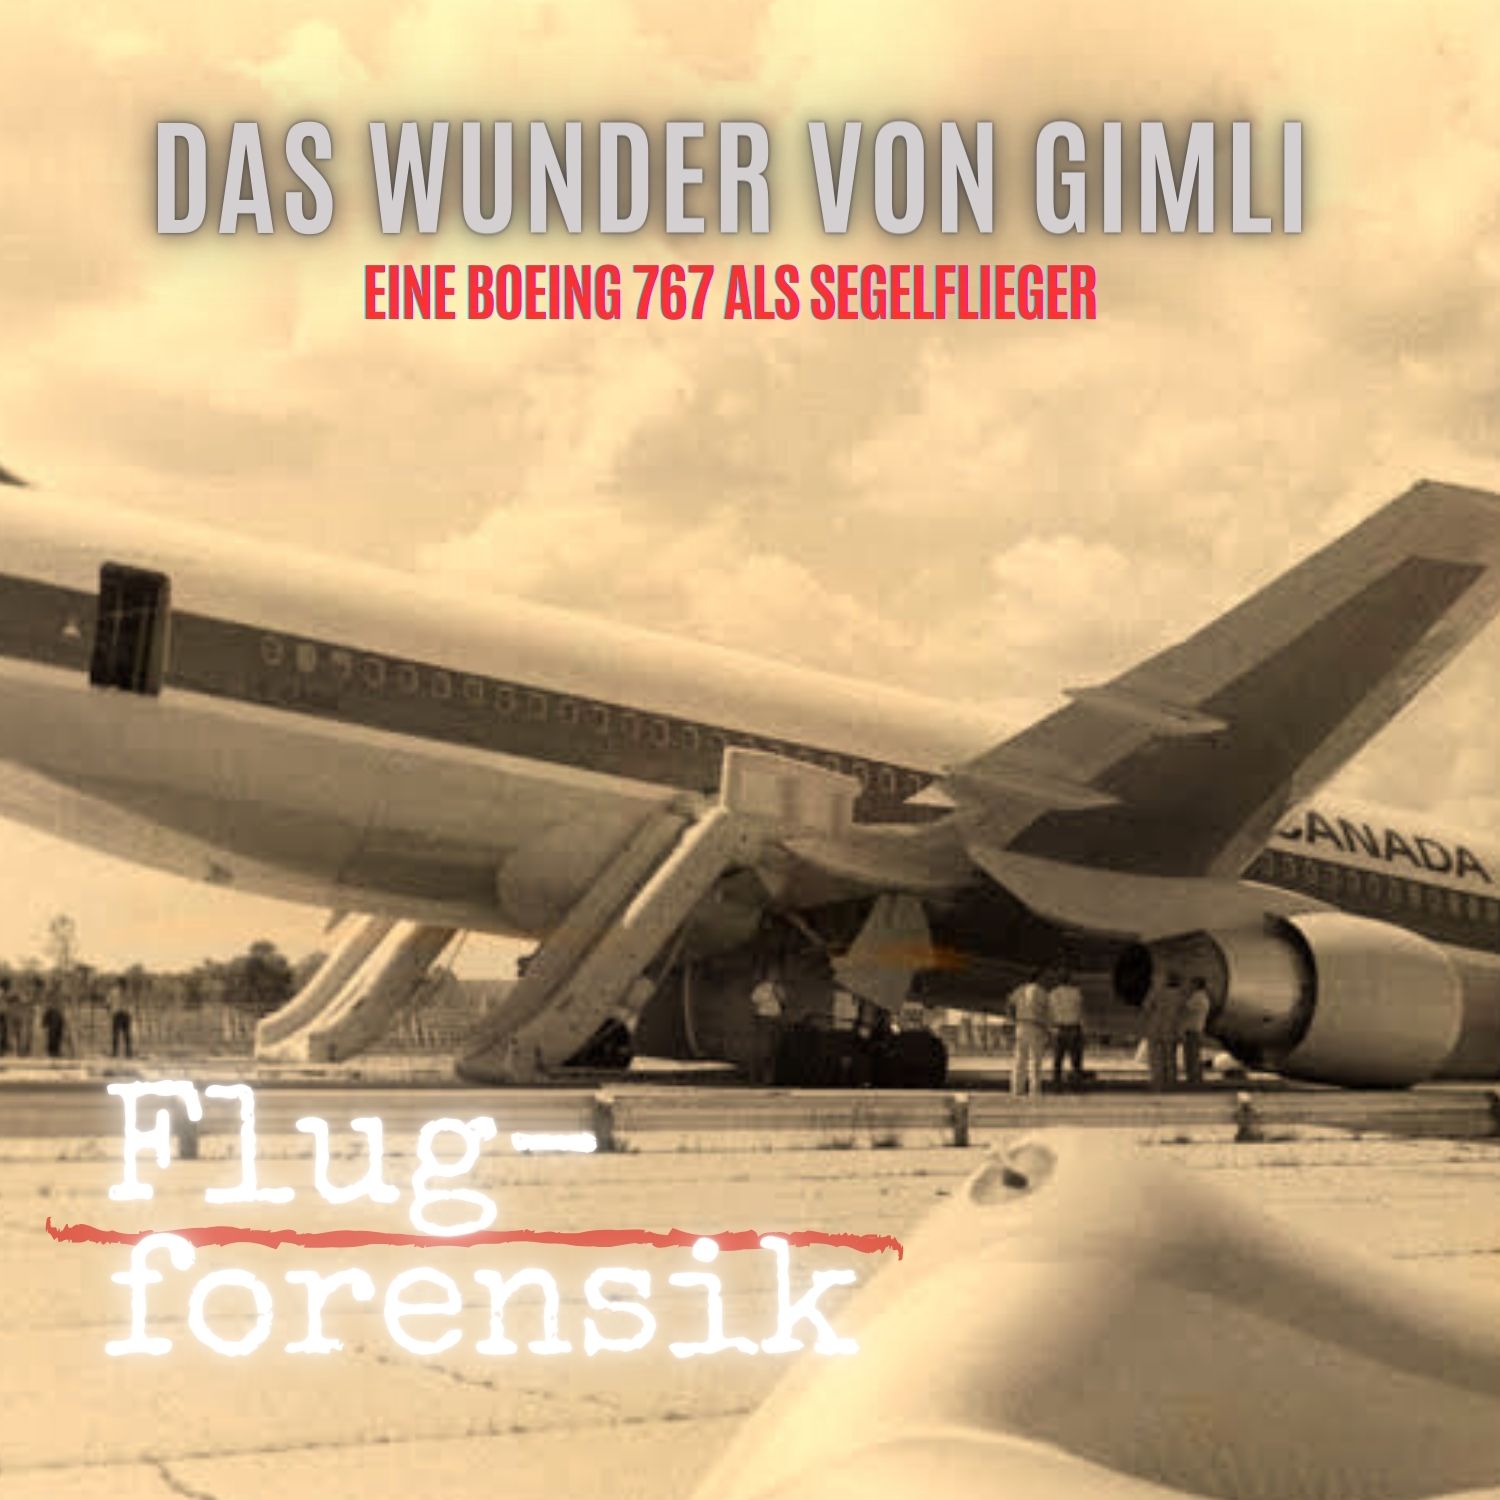 Episode 20: Der „Gimli Glider“ – eine Boeing 767 als Segelflieger